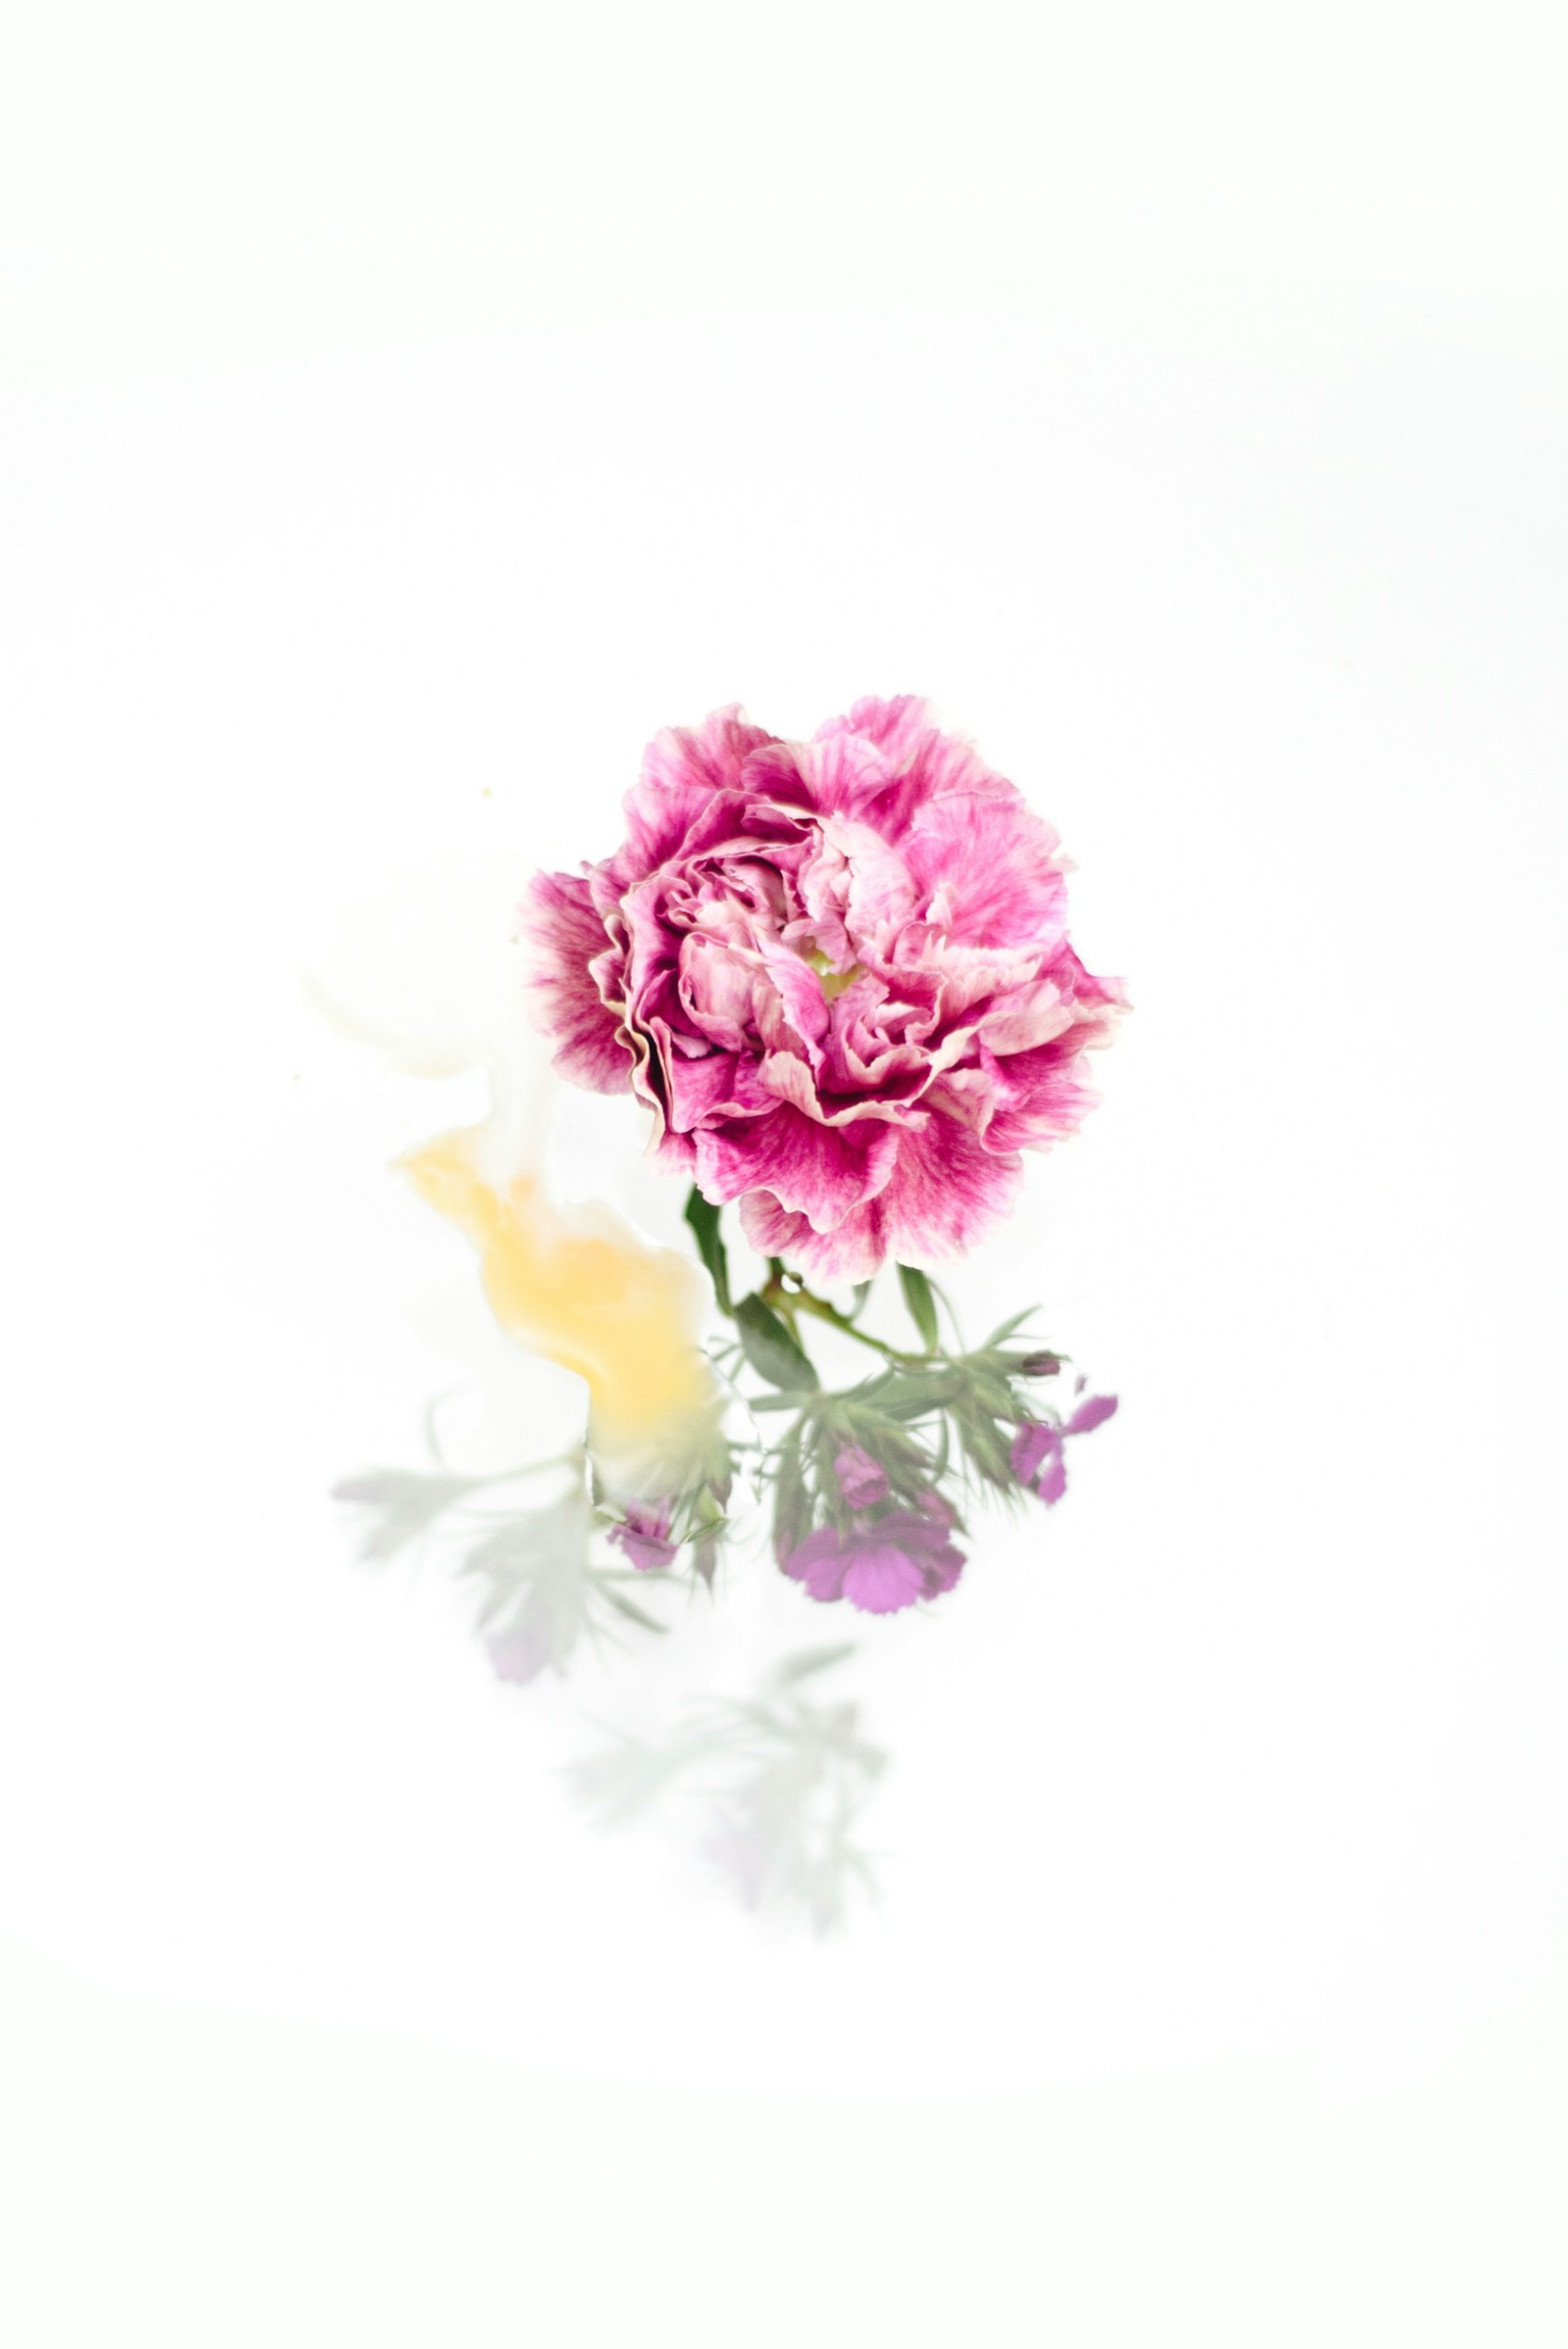 Nikon D750 + Nikon AF Nikkor 50mm F1.8D sample photo. Pink petaled flower photography